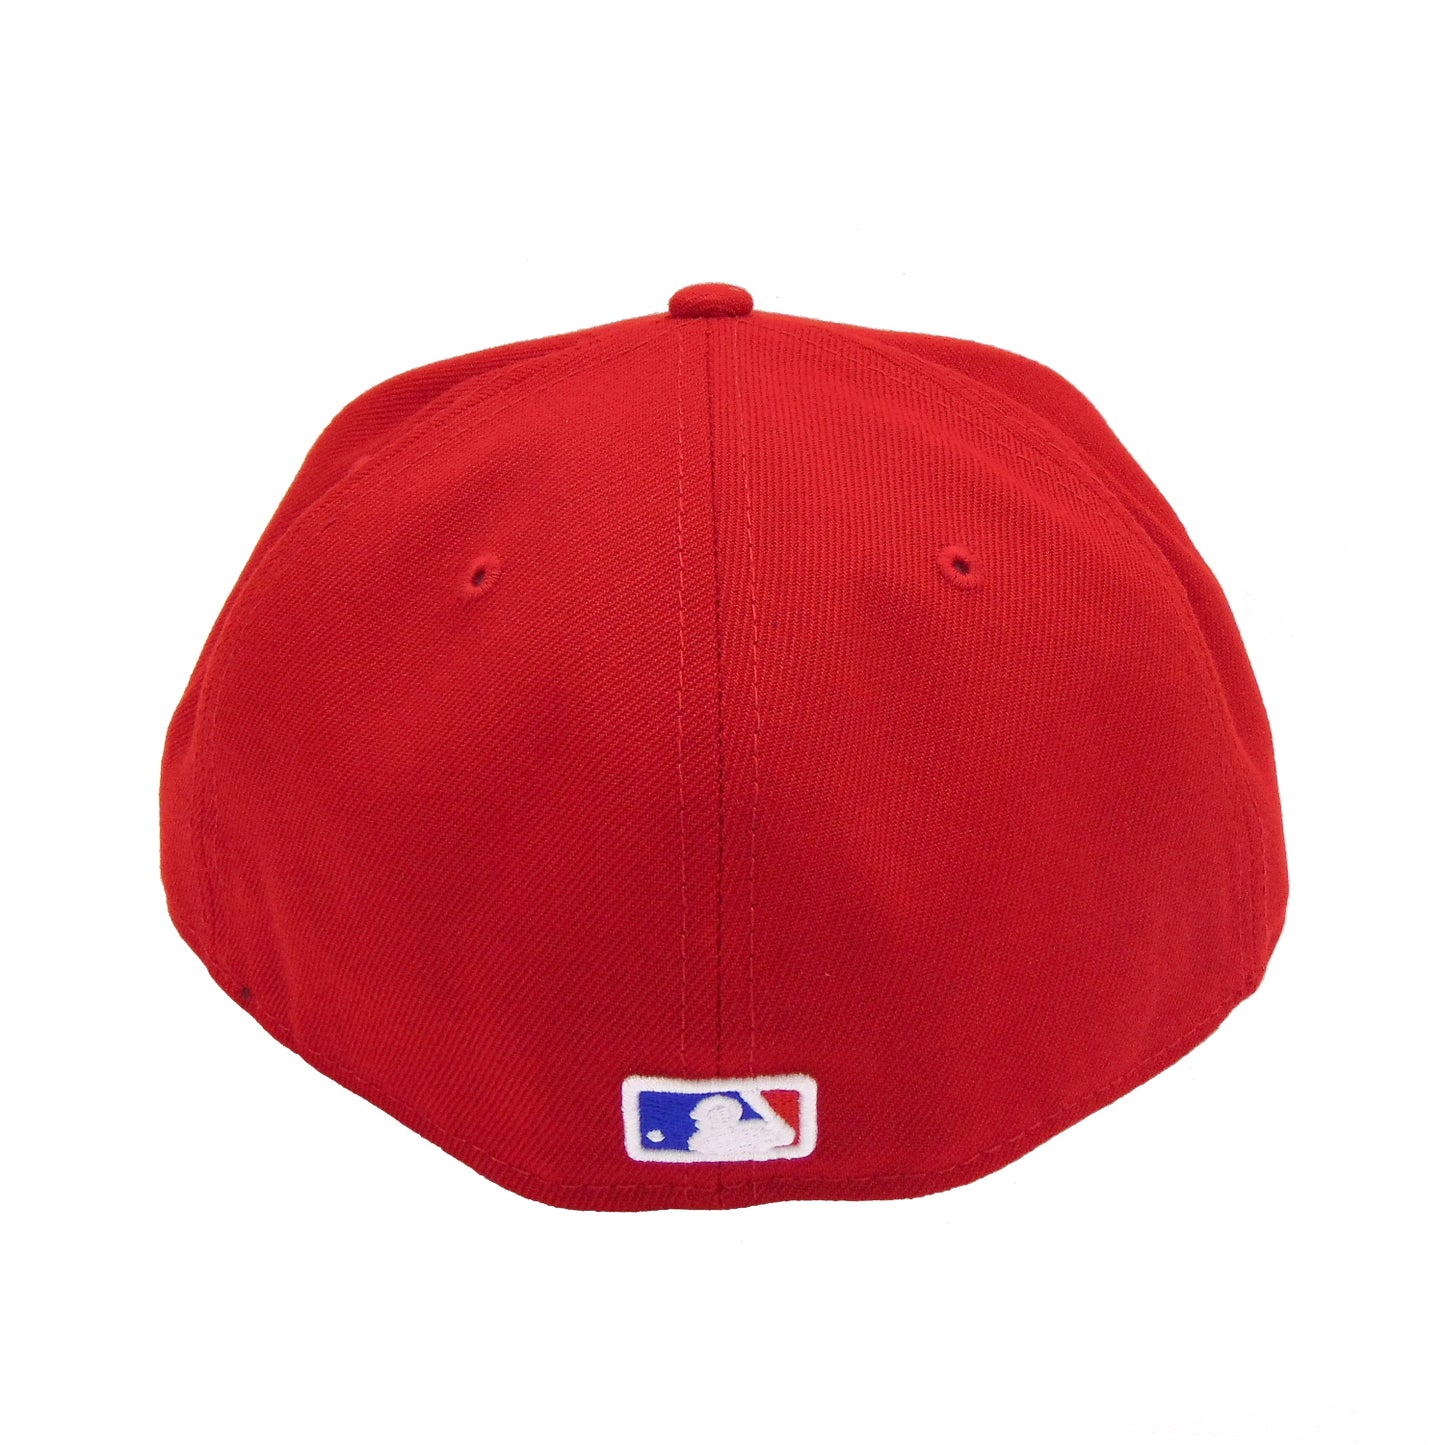 Texas Rangers Authentic Alternate New Era Cap Red